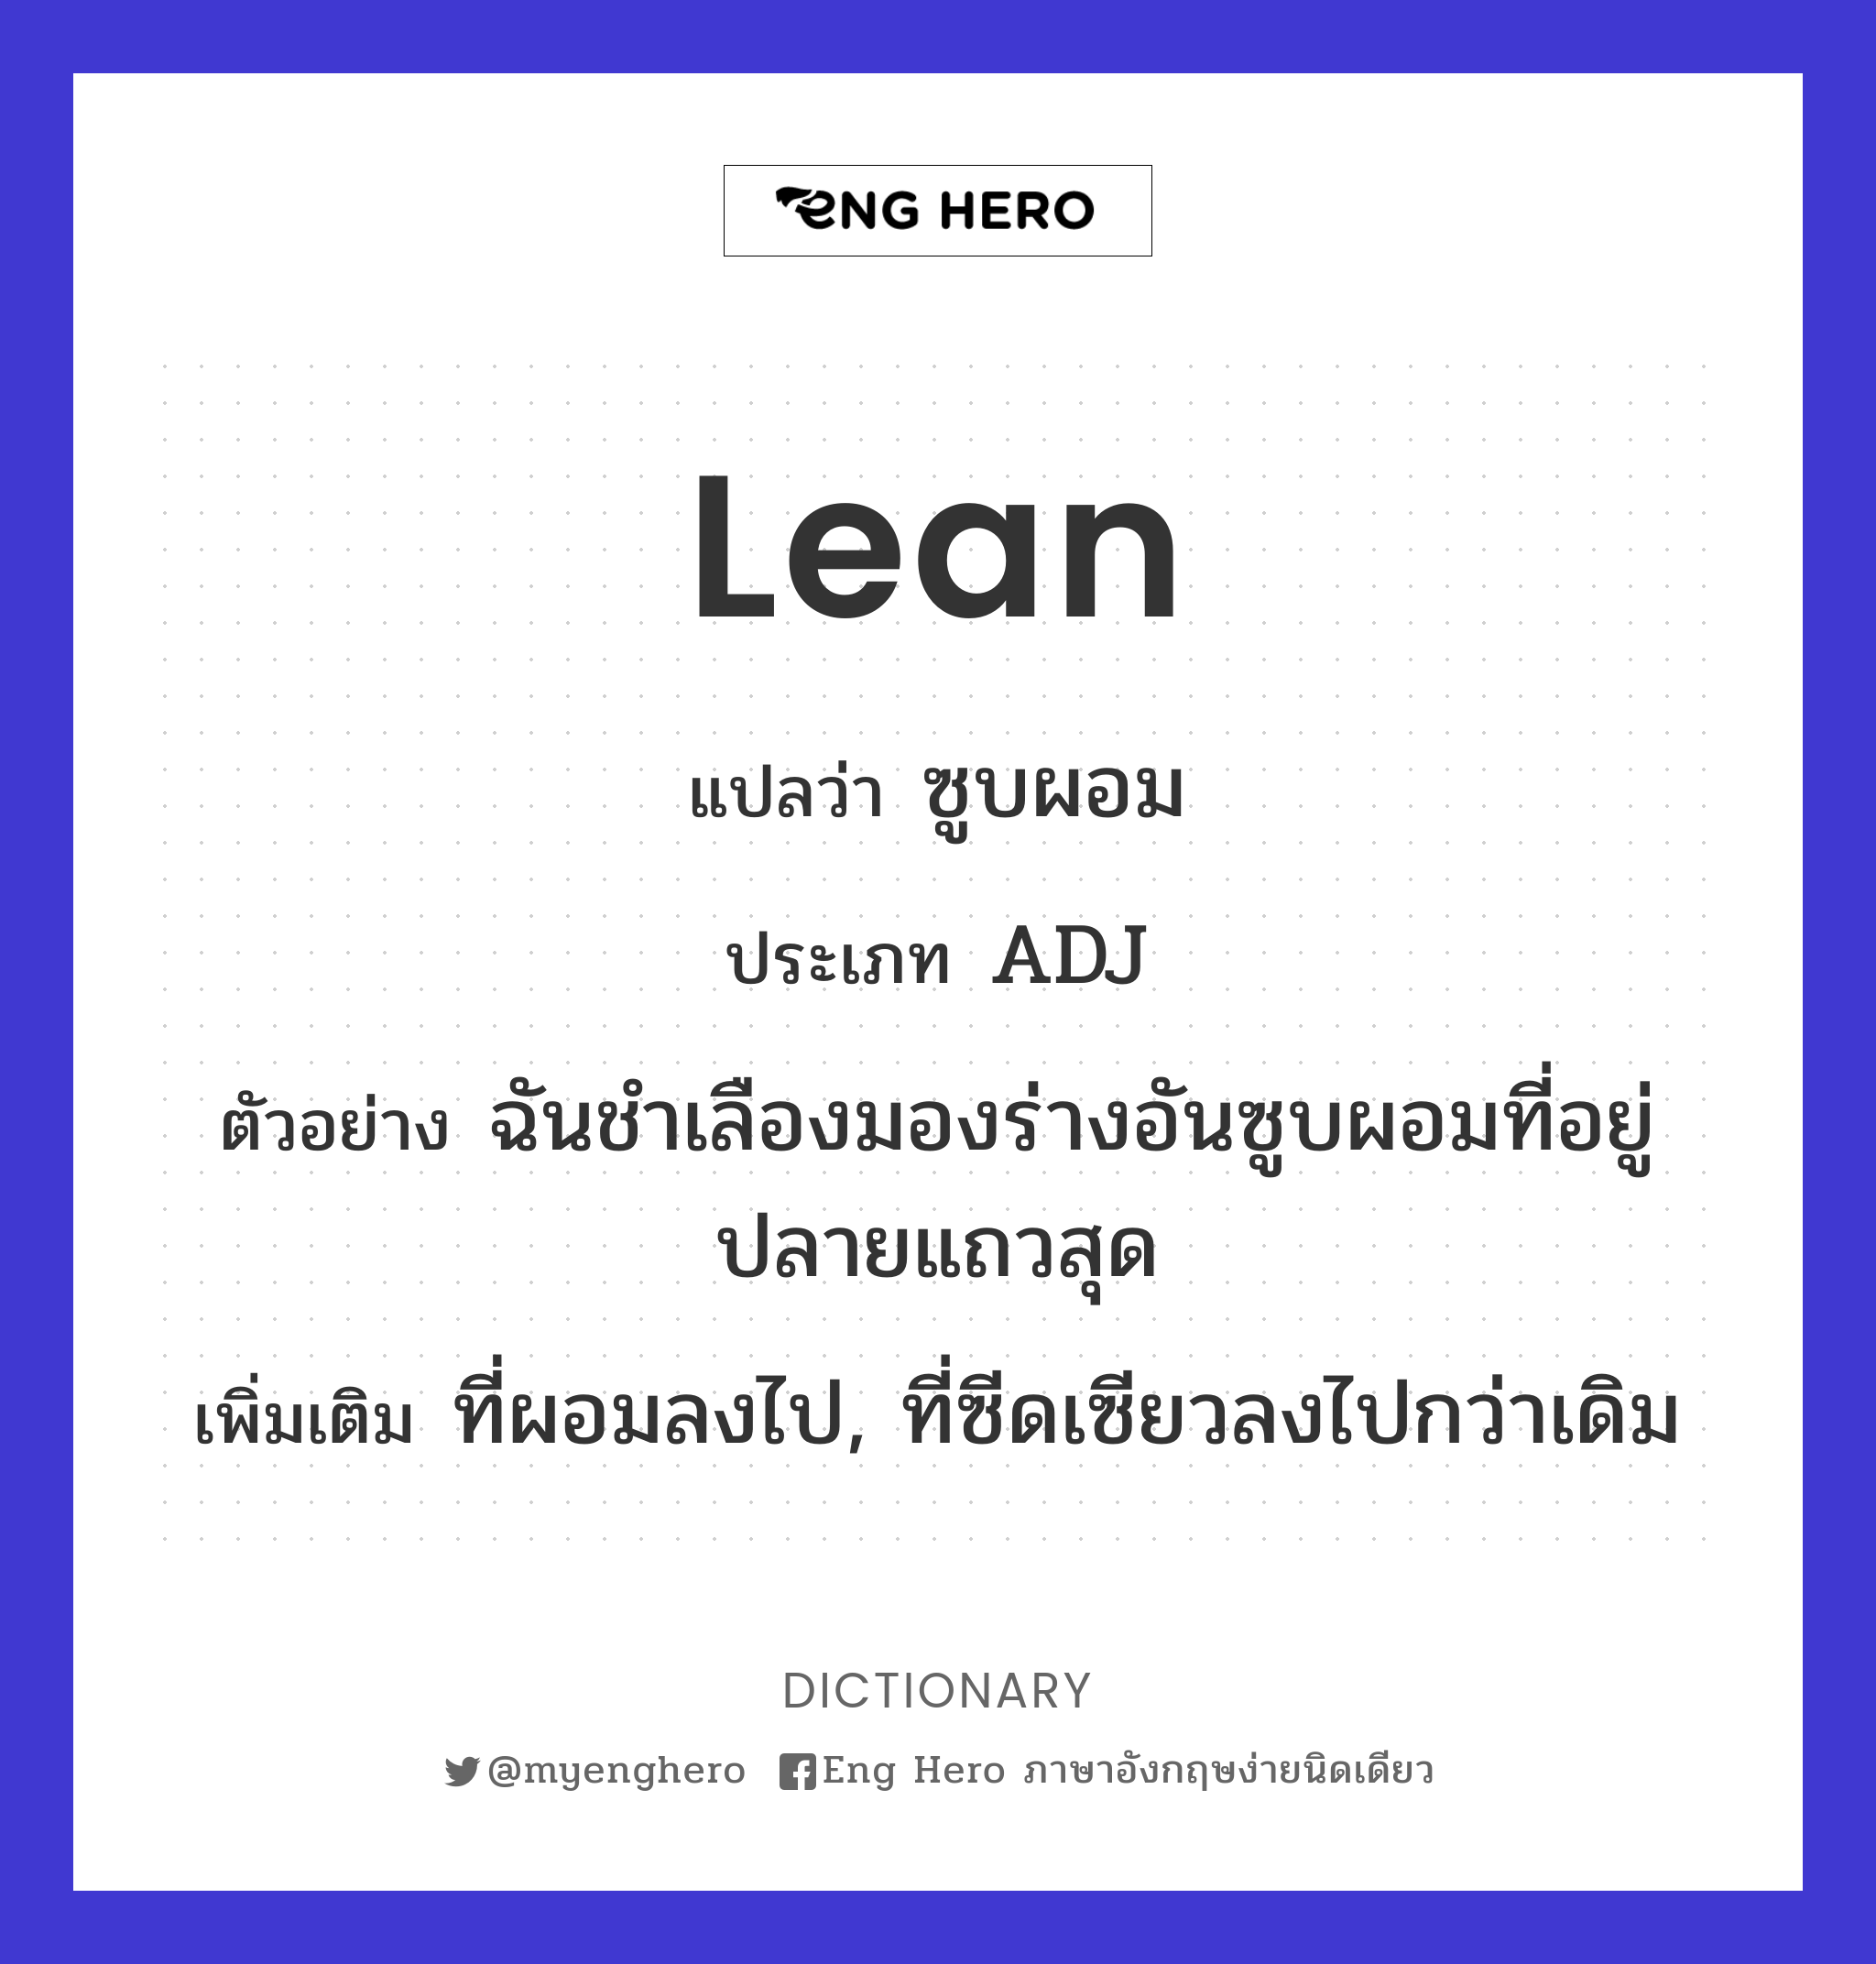 lean